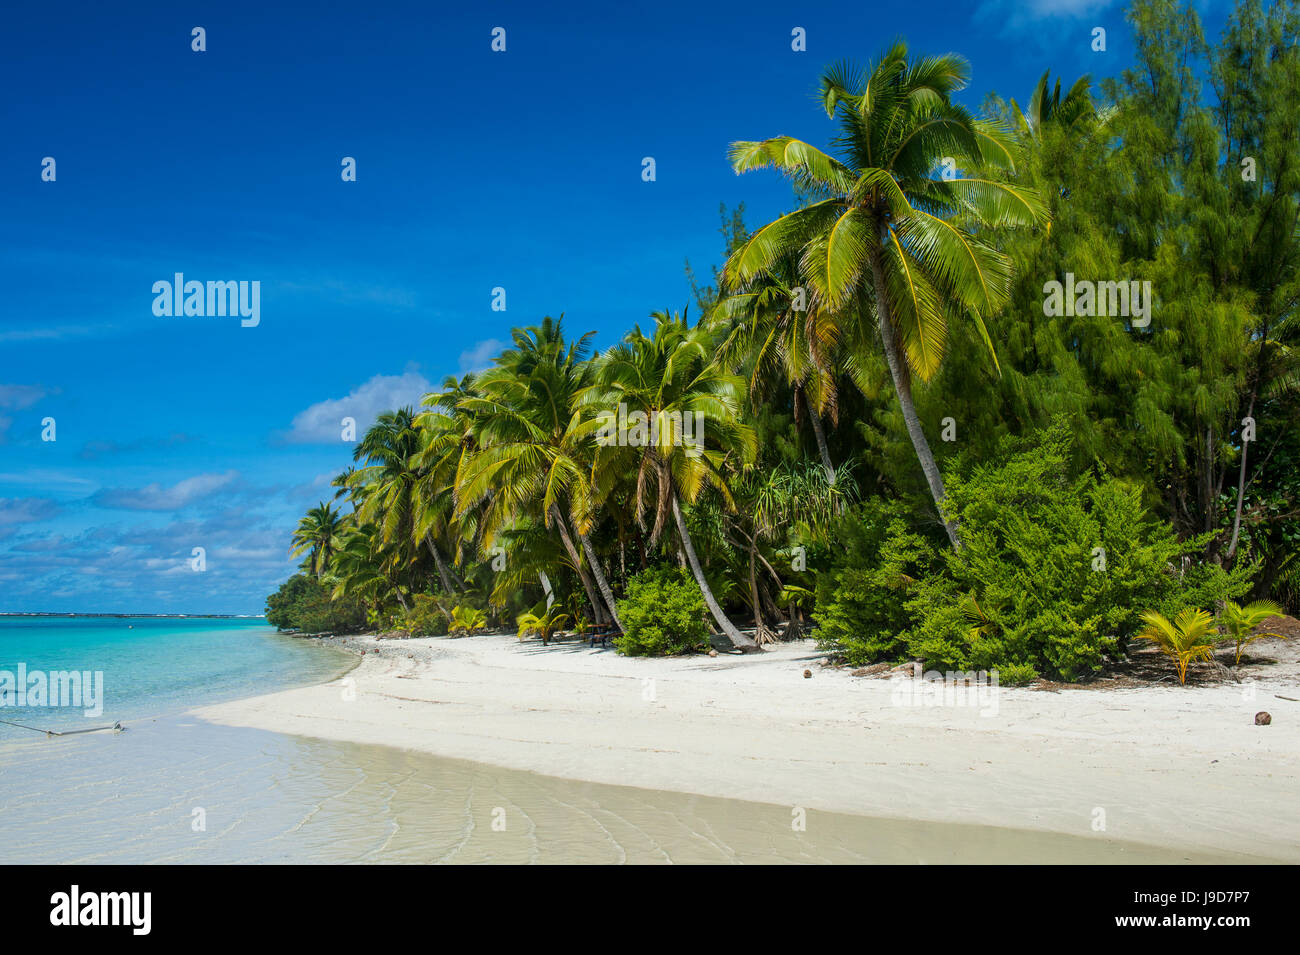 Banque de sable blanc dans les eaux turquoise de l'Aitutaki Lagoon, Rarotonga et les Îles Cook, du Pacifique Sud, du Pacifique Banque D'Images